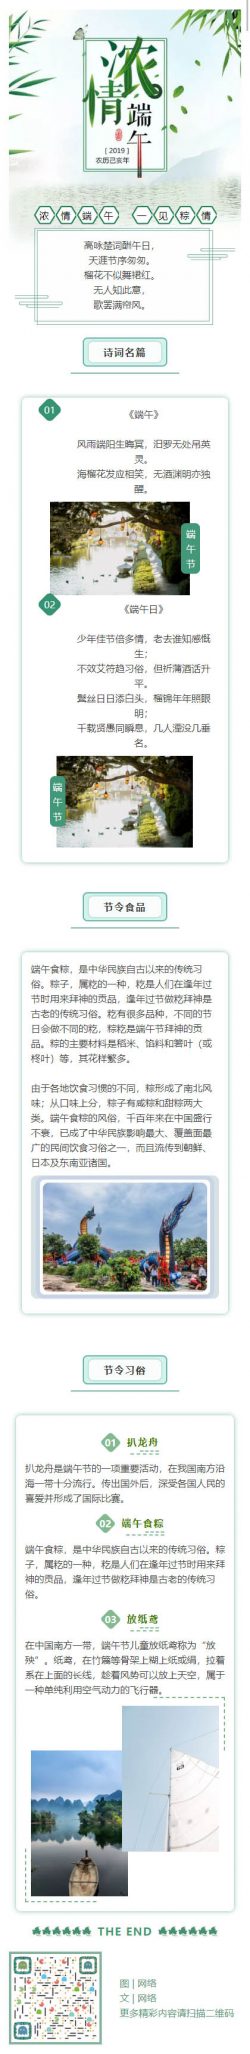 微信端午节公众号推送素材模板中国传统节日绿色风格推文